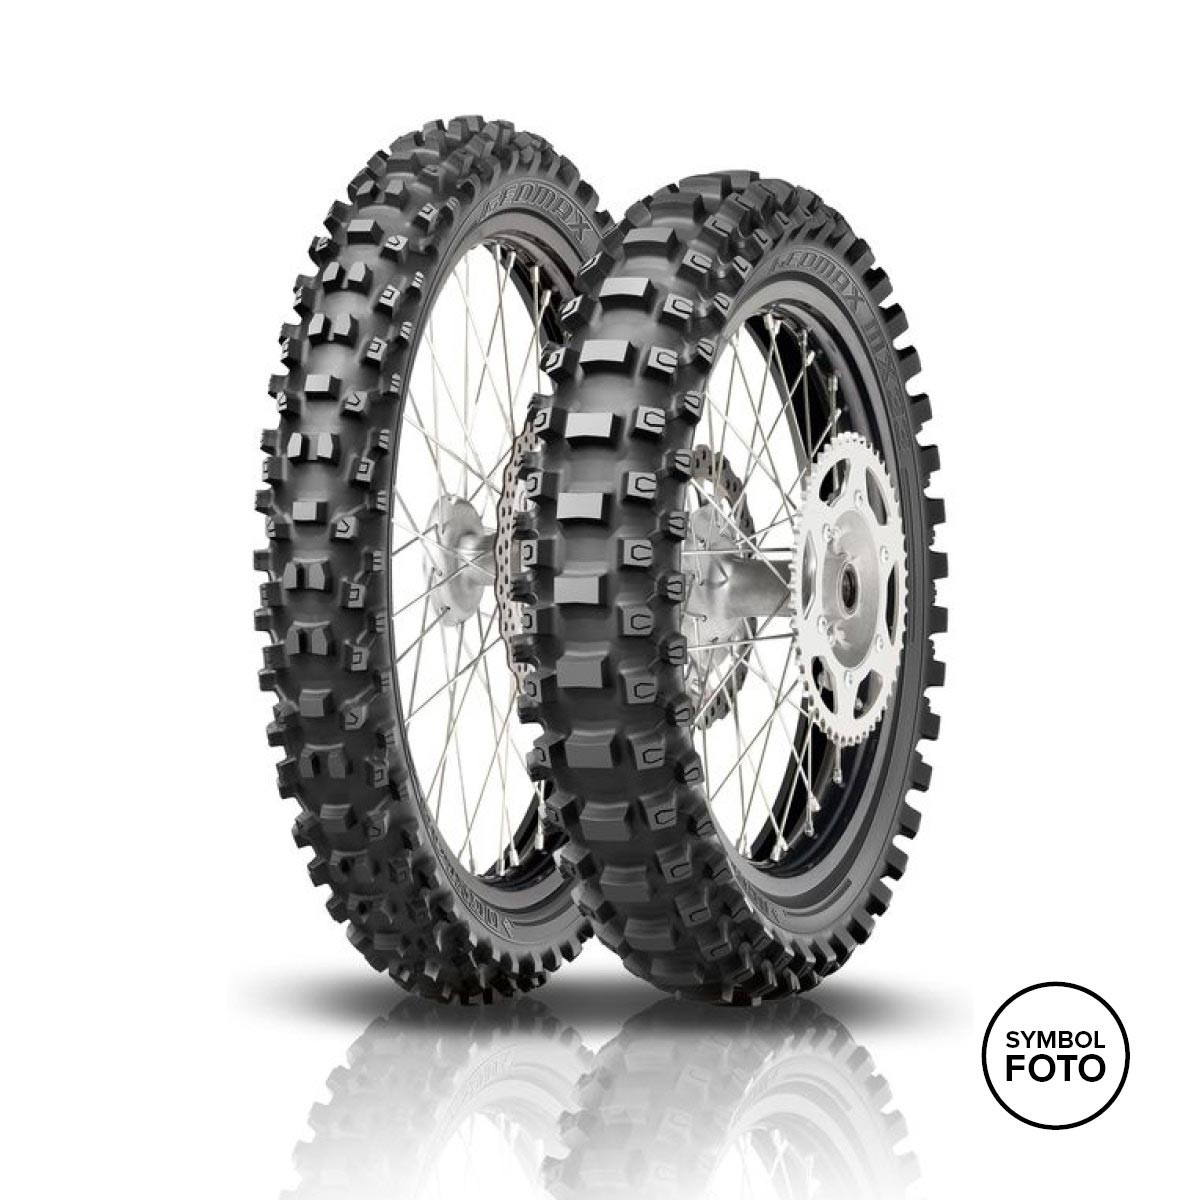 Dunlop MOTOCROSS Reifen MX33 kaufen - GEOMAX Auner online bei